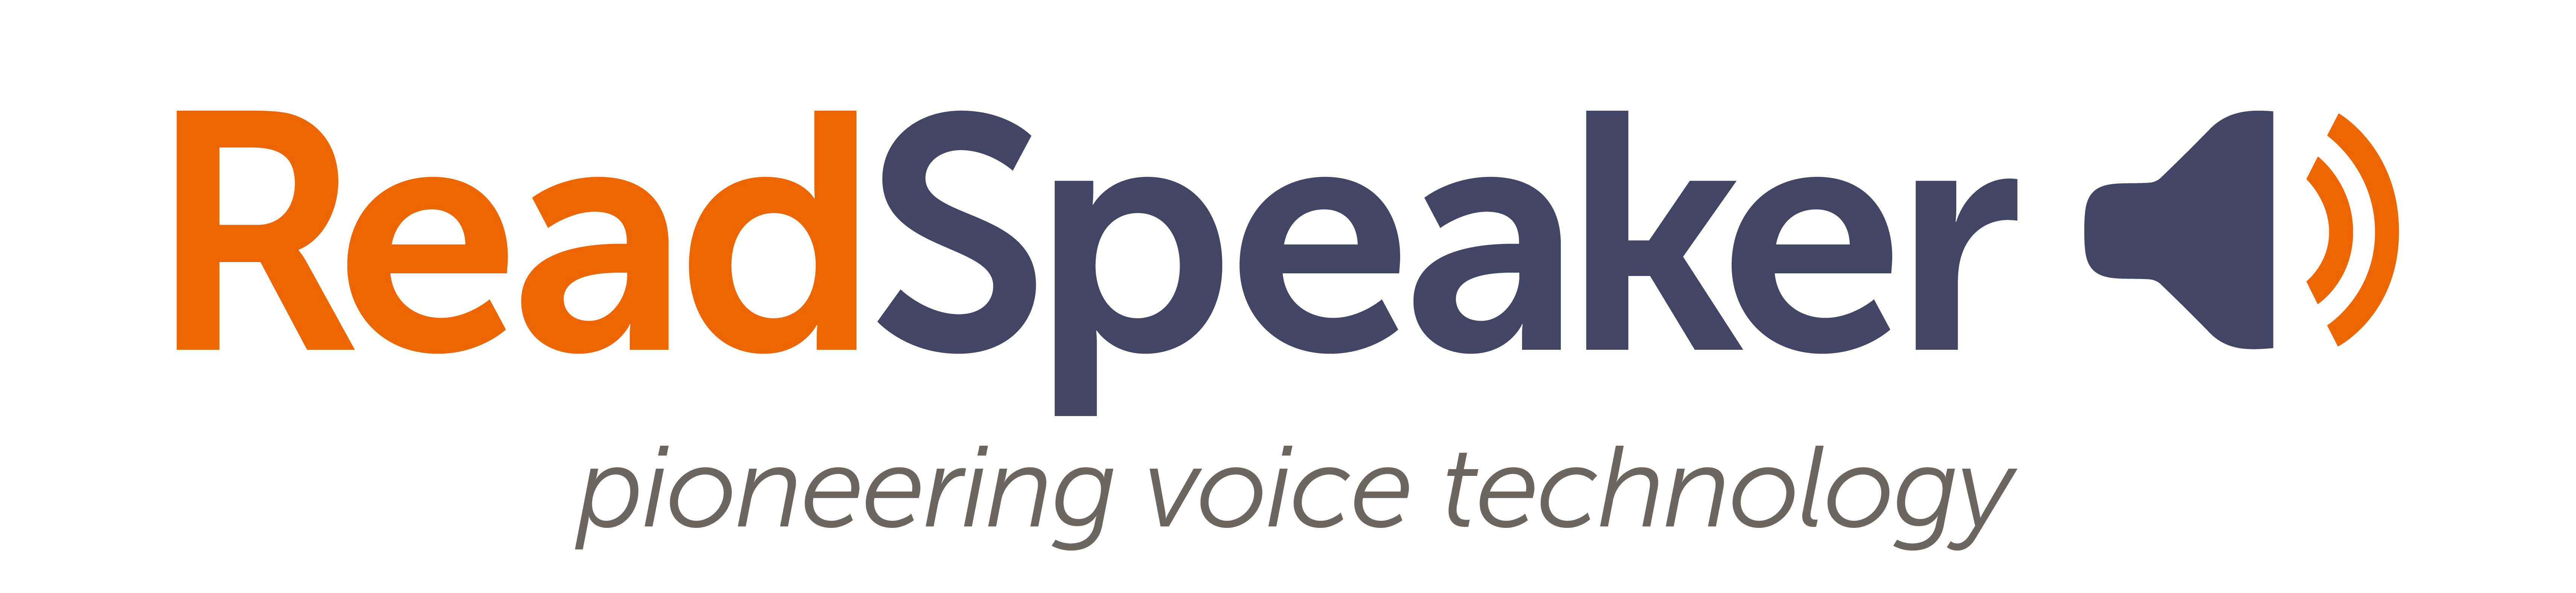 ReadSpeaker Logo Banner